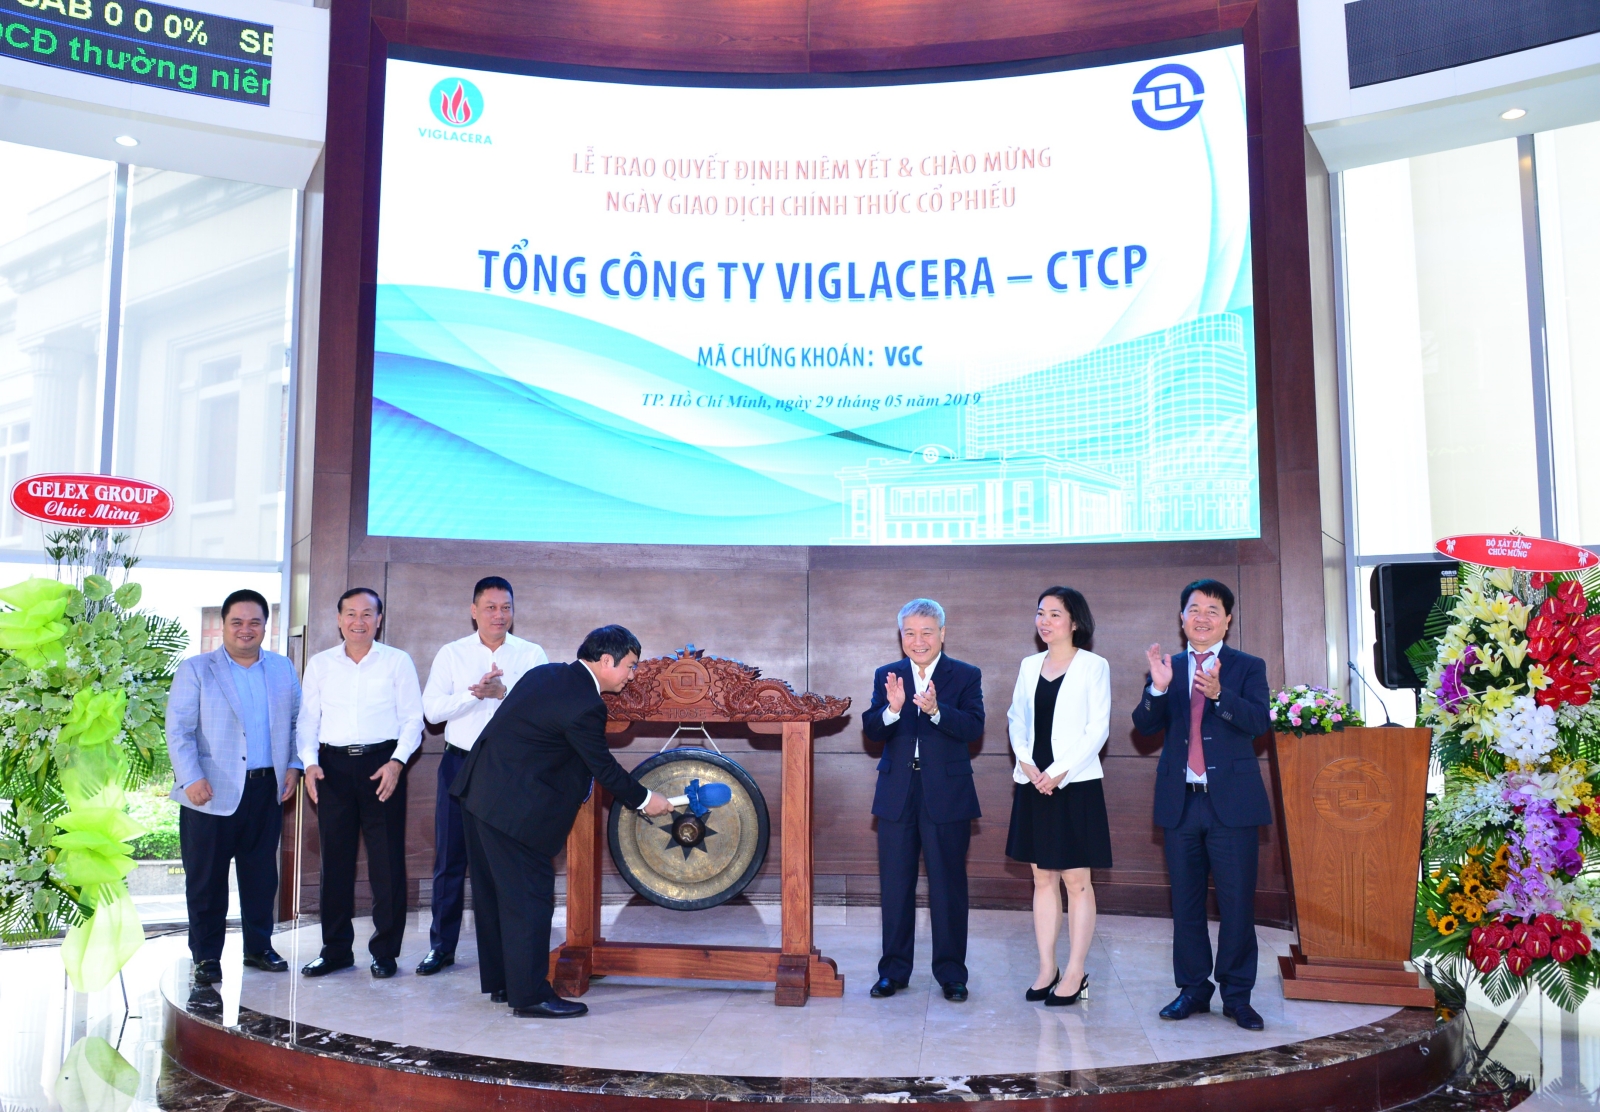 Tổng công ty Viglacera - CTCP: TOP 50 công ty niêm yết tốt nhất Việt Nam năm 2021